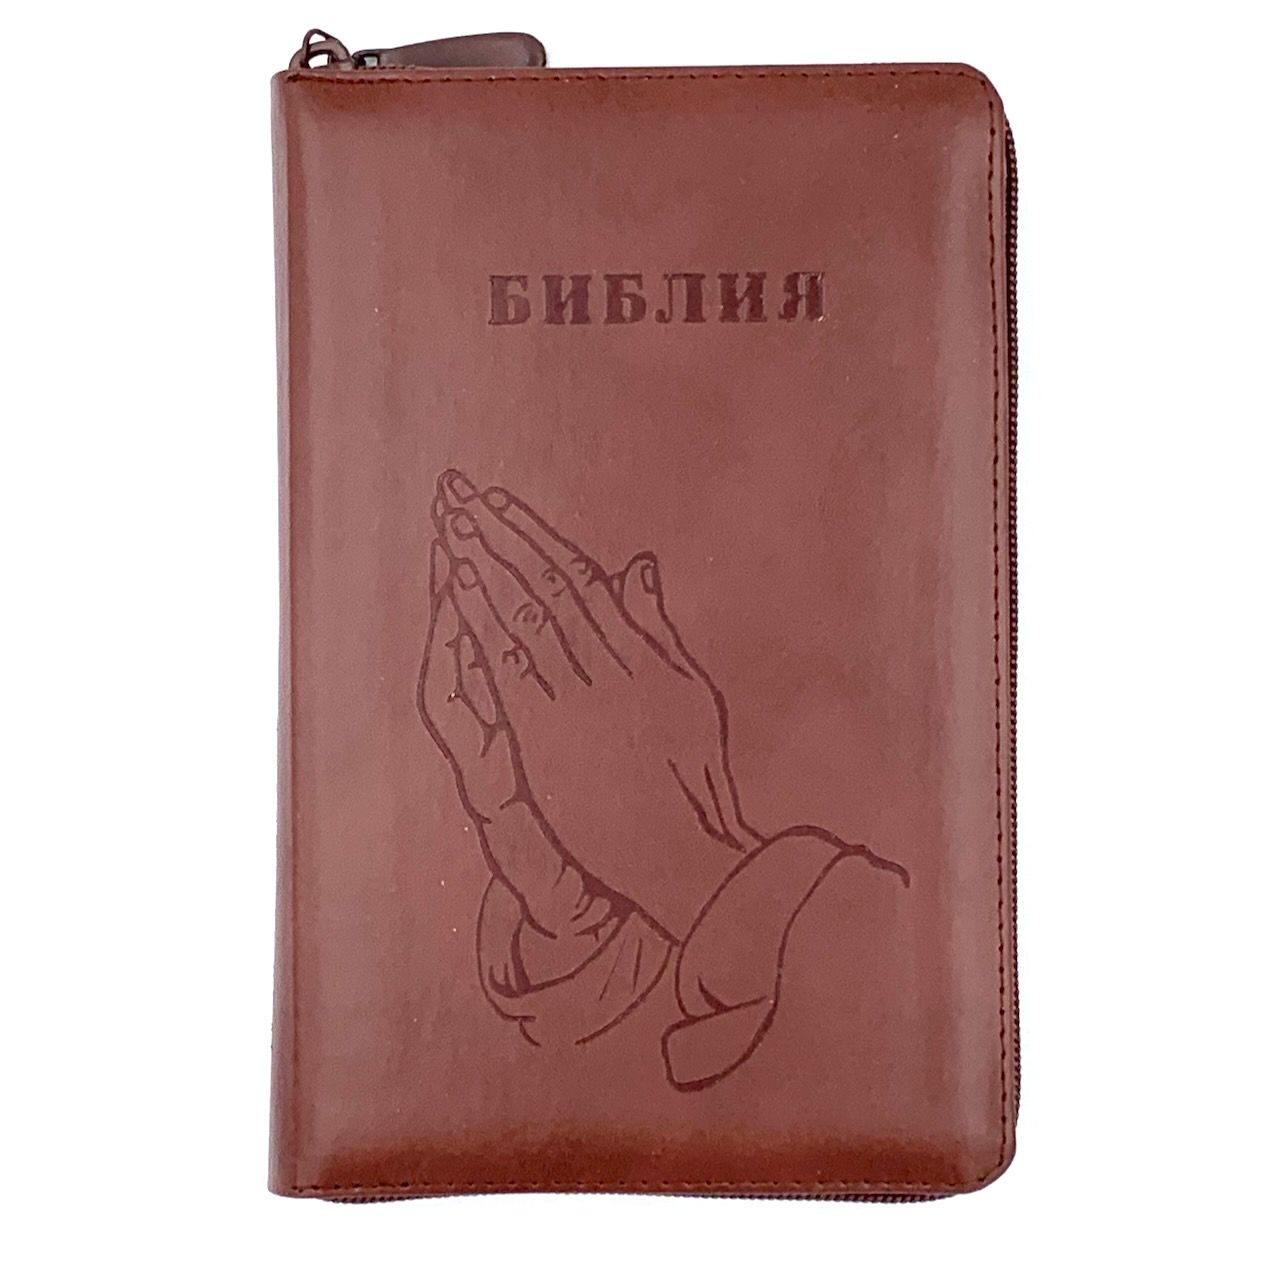 Библия 048 zti код 24048-17 термо штамп "руки молящегося", кожаный переплет на молнии с индексами, цвет коричневый формат 125*195 мм